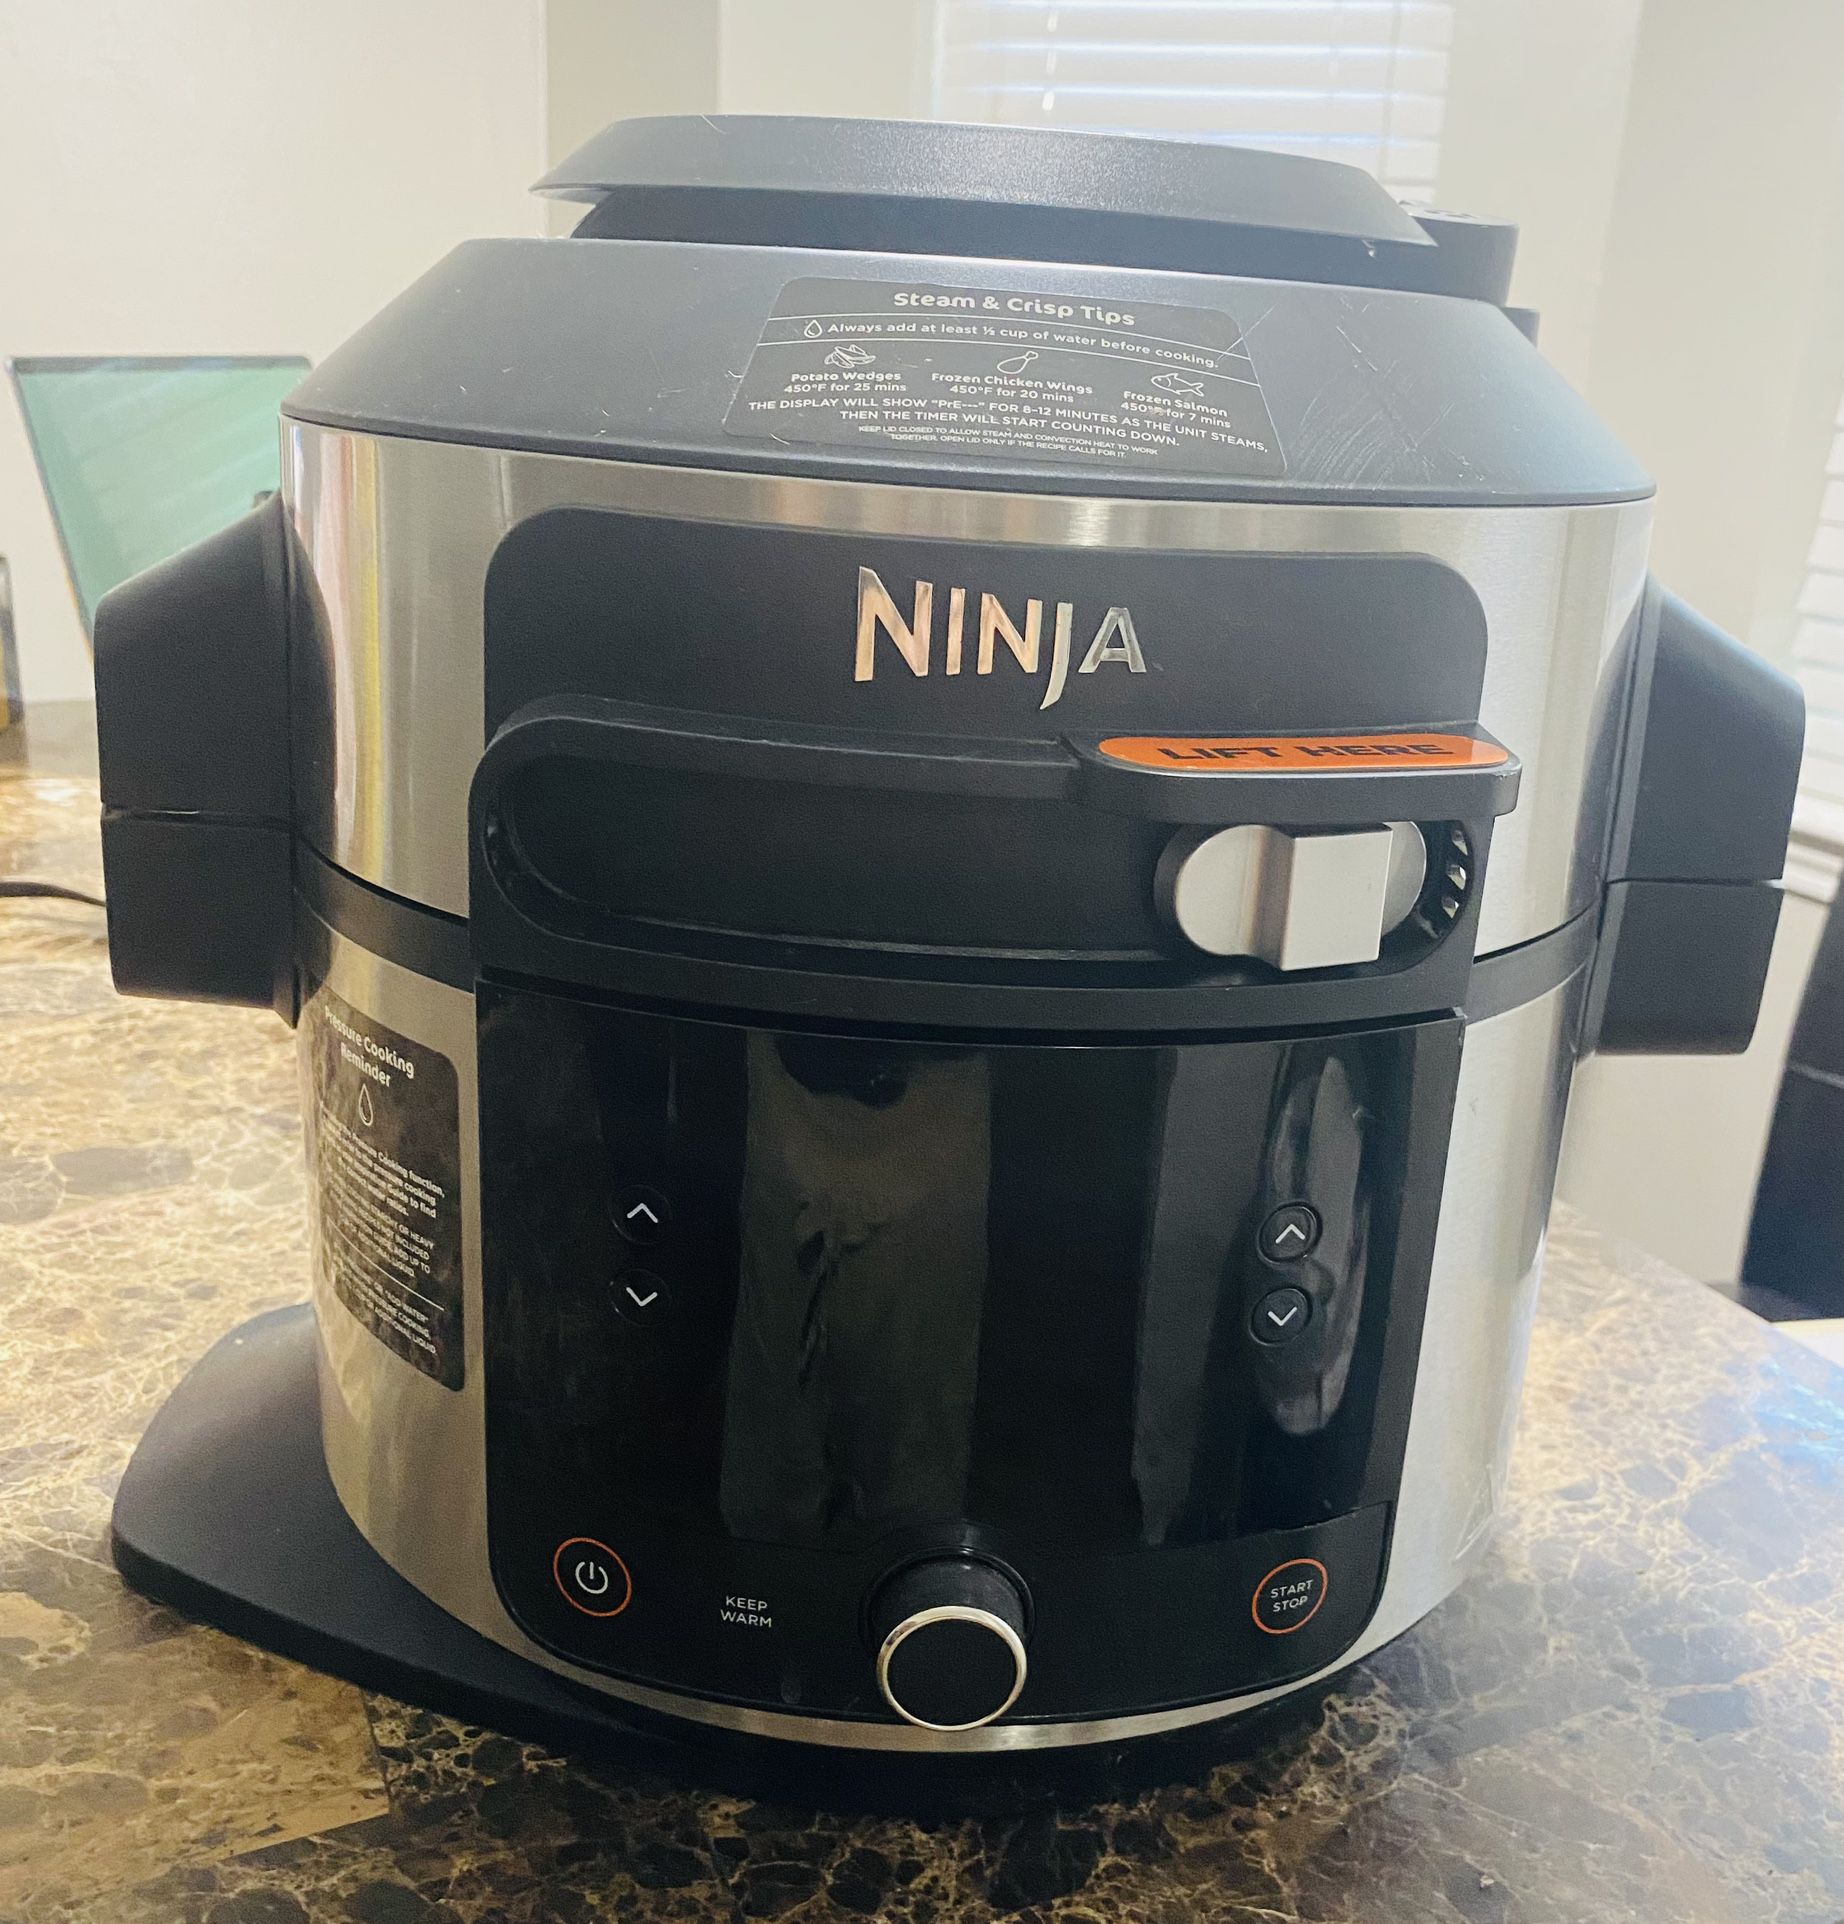 Ninja Pressure Cooker Steam Fryer With Smart Lid 